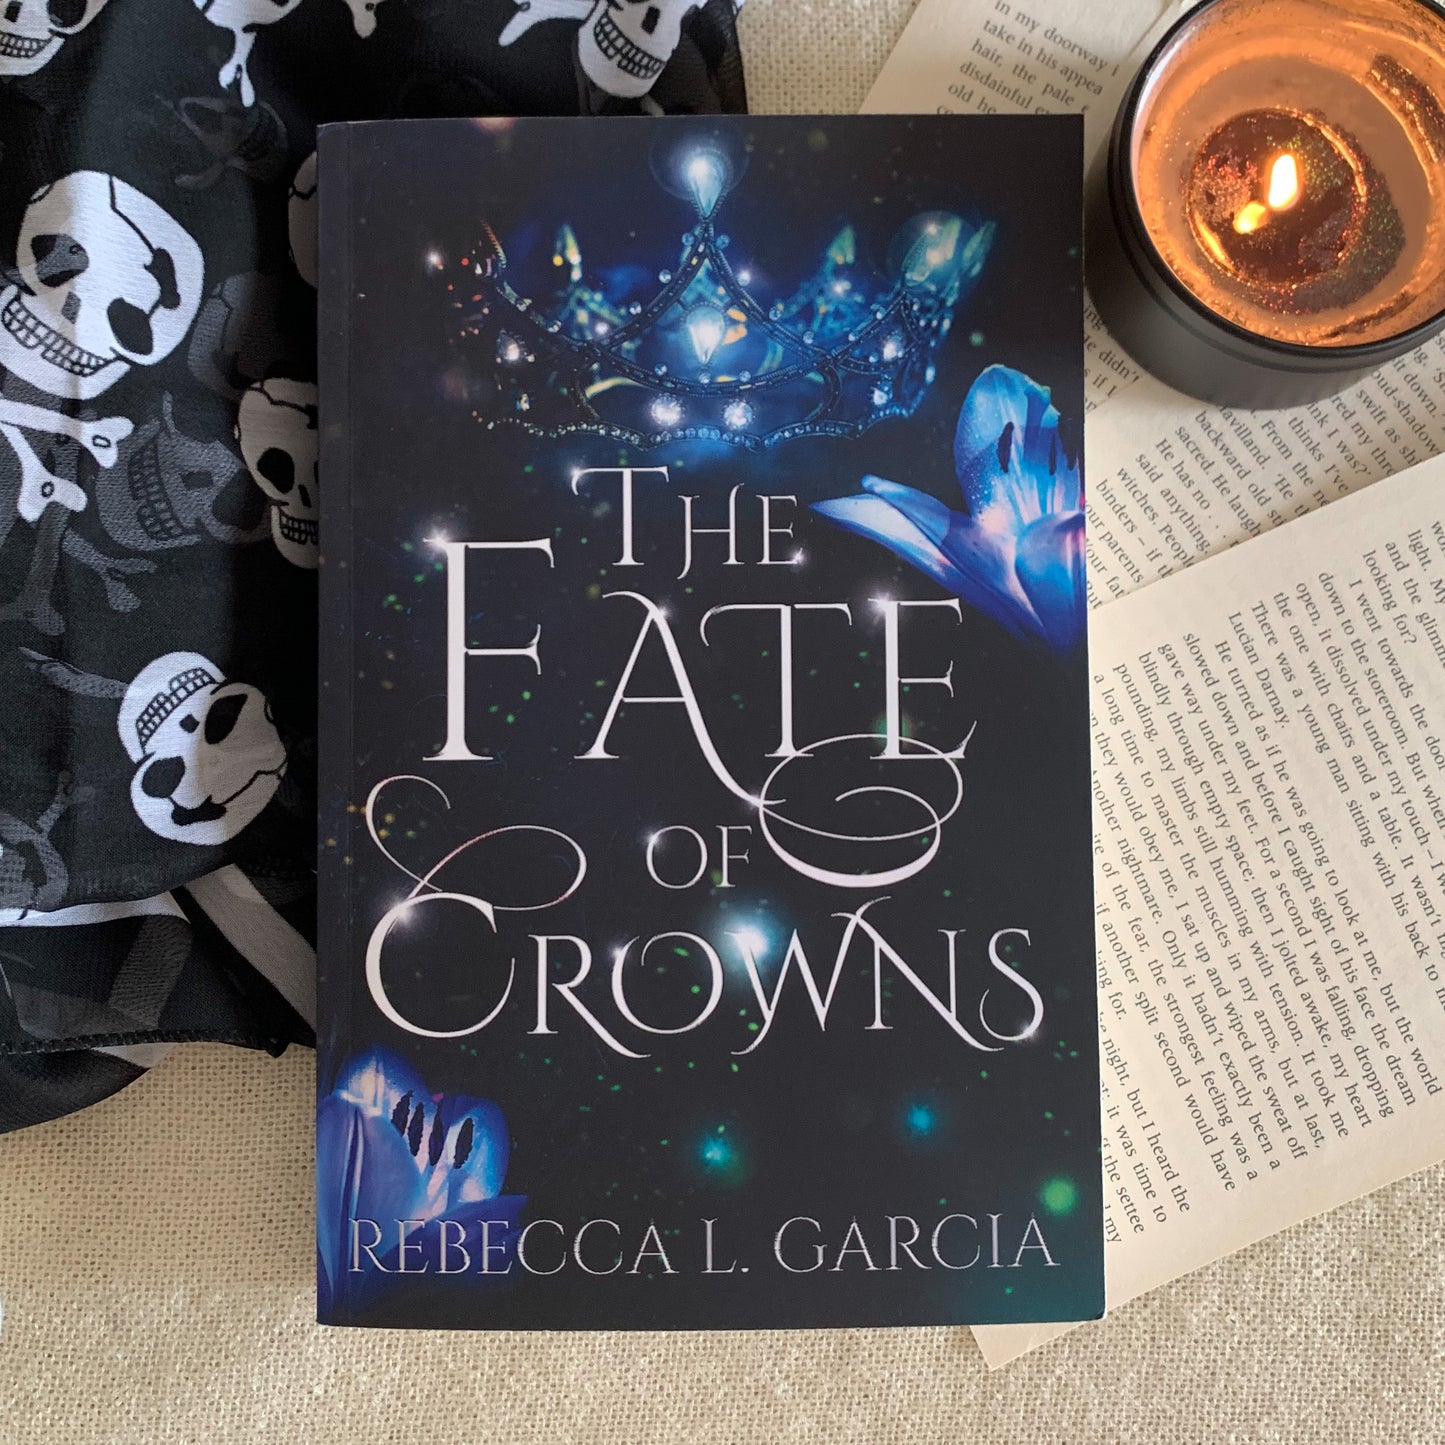 The Fate of Crowns by Rebecca L. Garcia